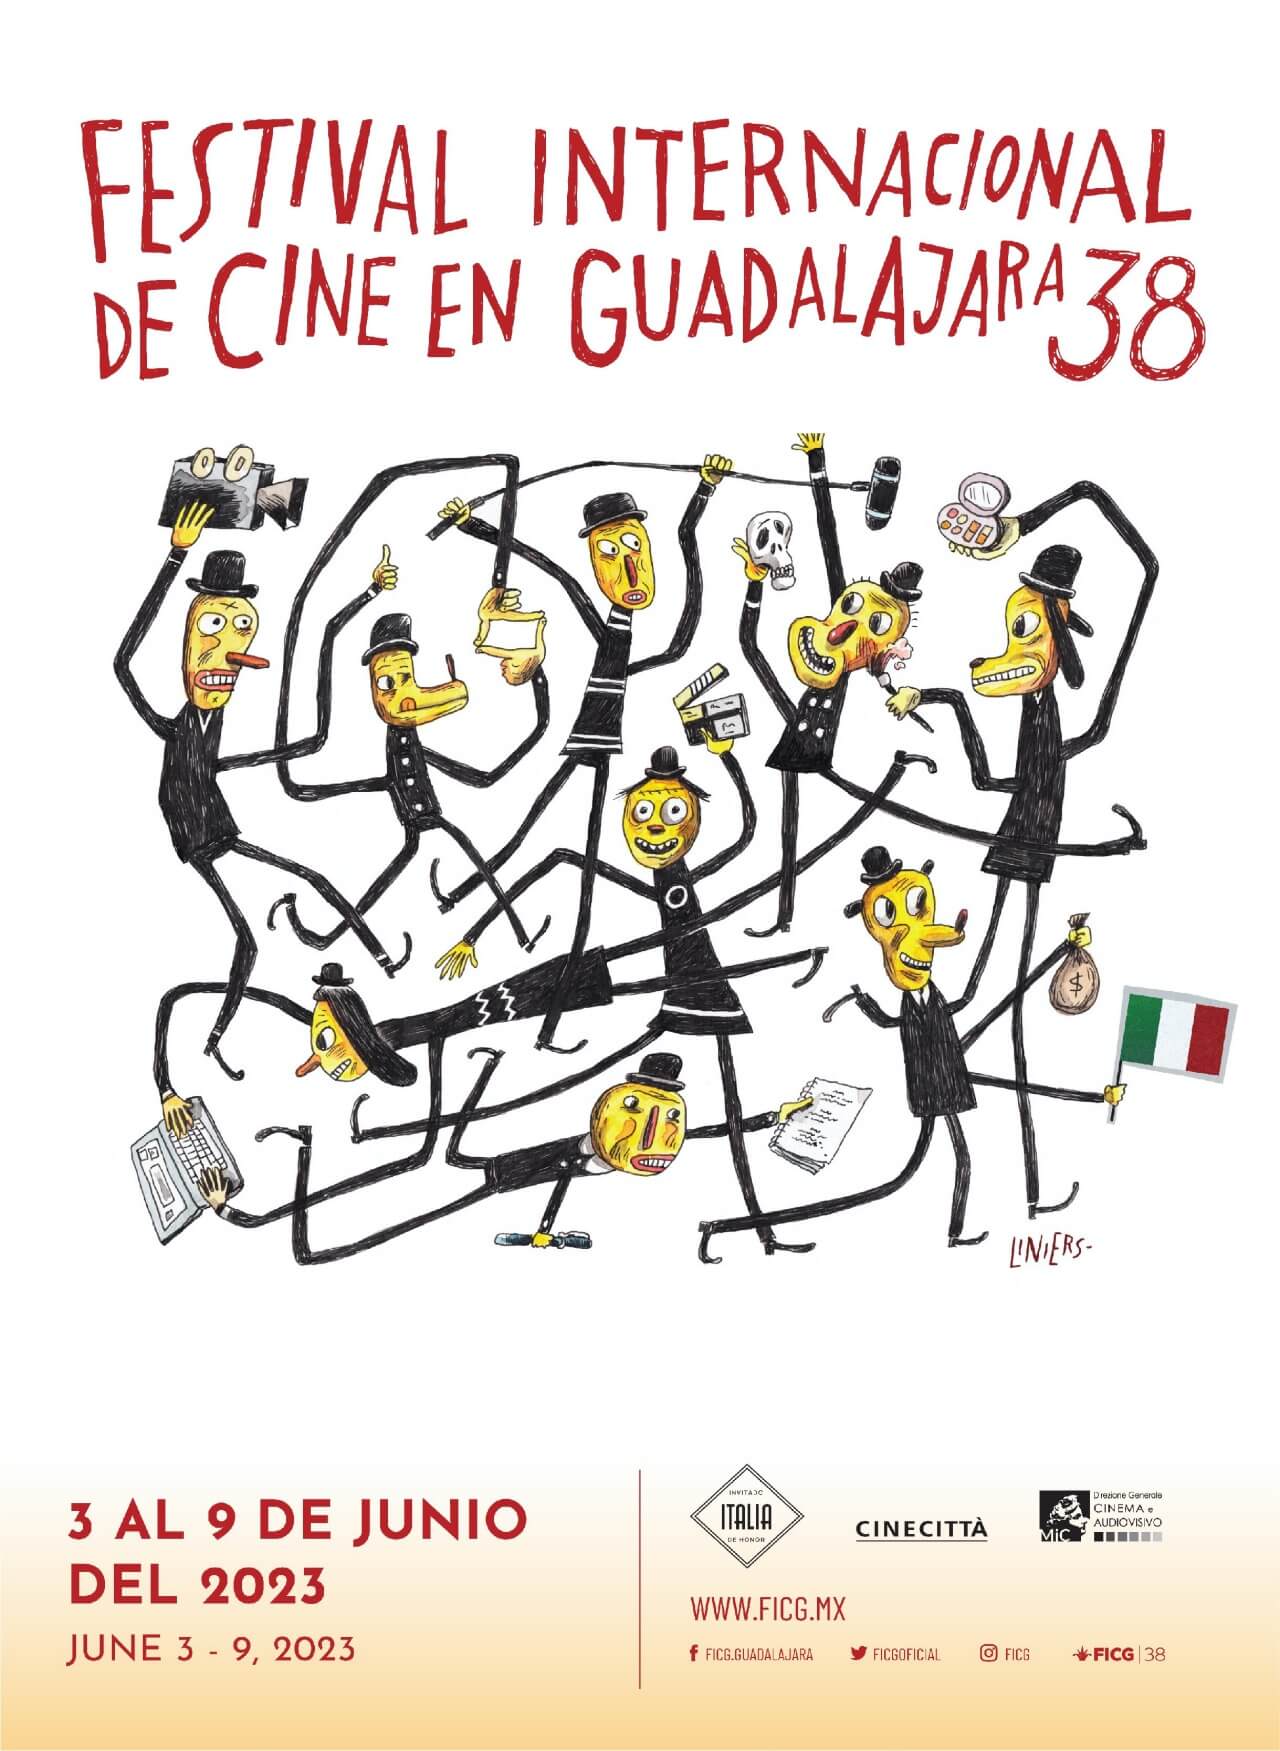 FICG 38, del 3 al 9 de Junio 2023 en Guadalajara